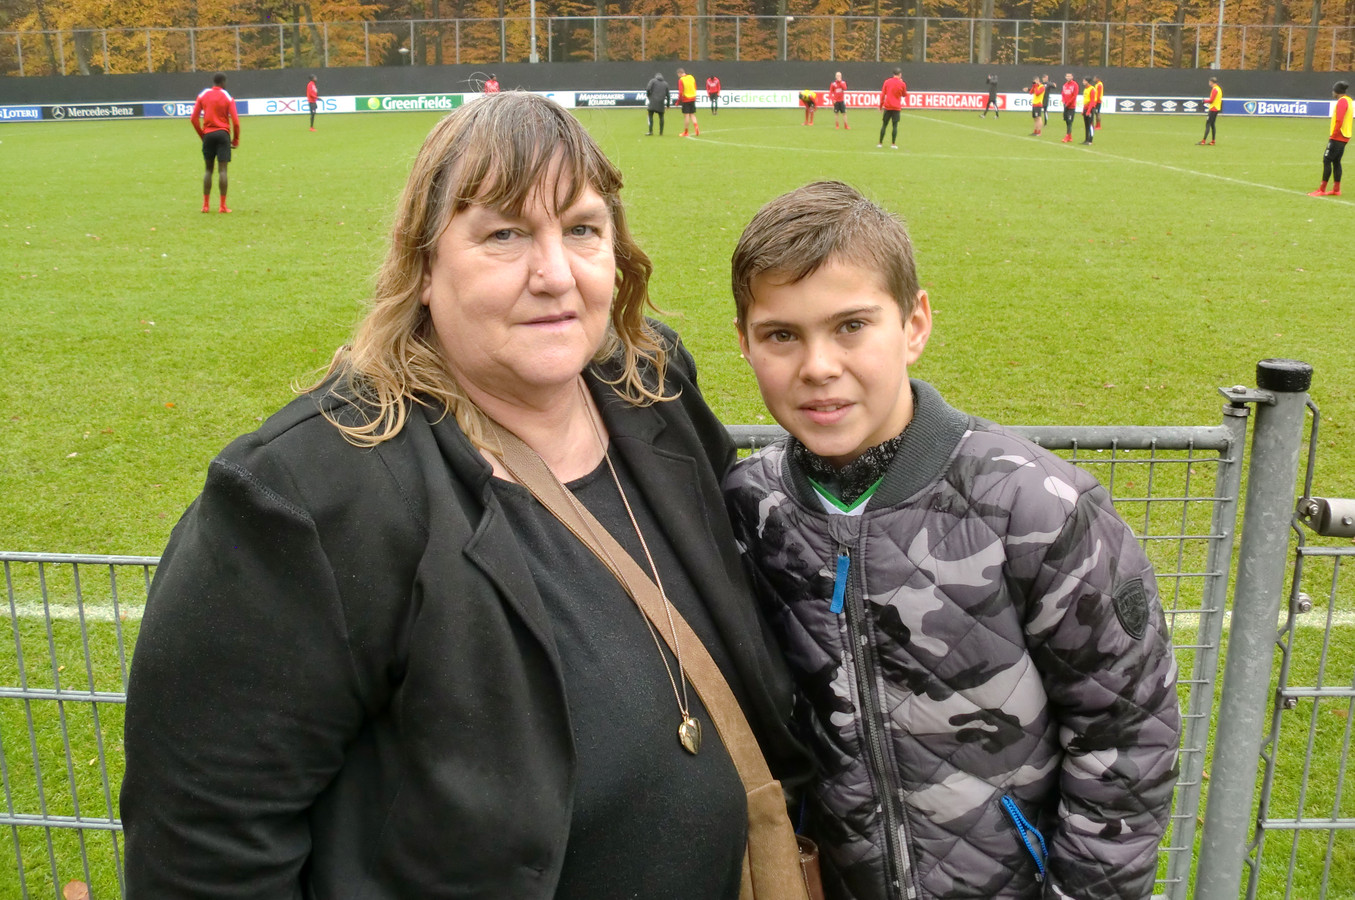 Oma Elly Oors en Daniël bij de training van PSV. Oma diende een wens in bij BN DeStem. Ze wlide een dag met haar kleinzoon naar PSV